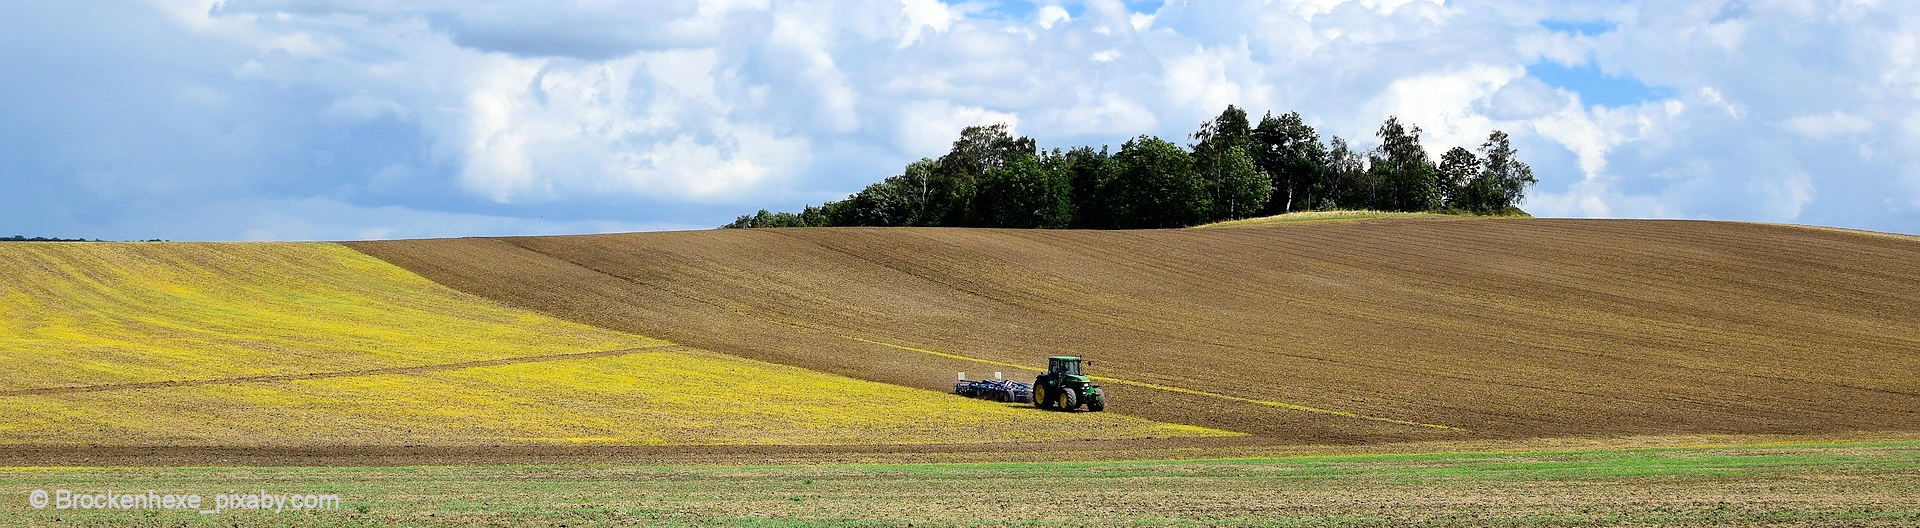 Abbildung einer Agrarlandschaft mit Traktor